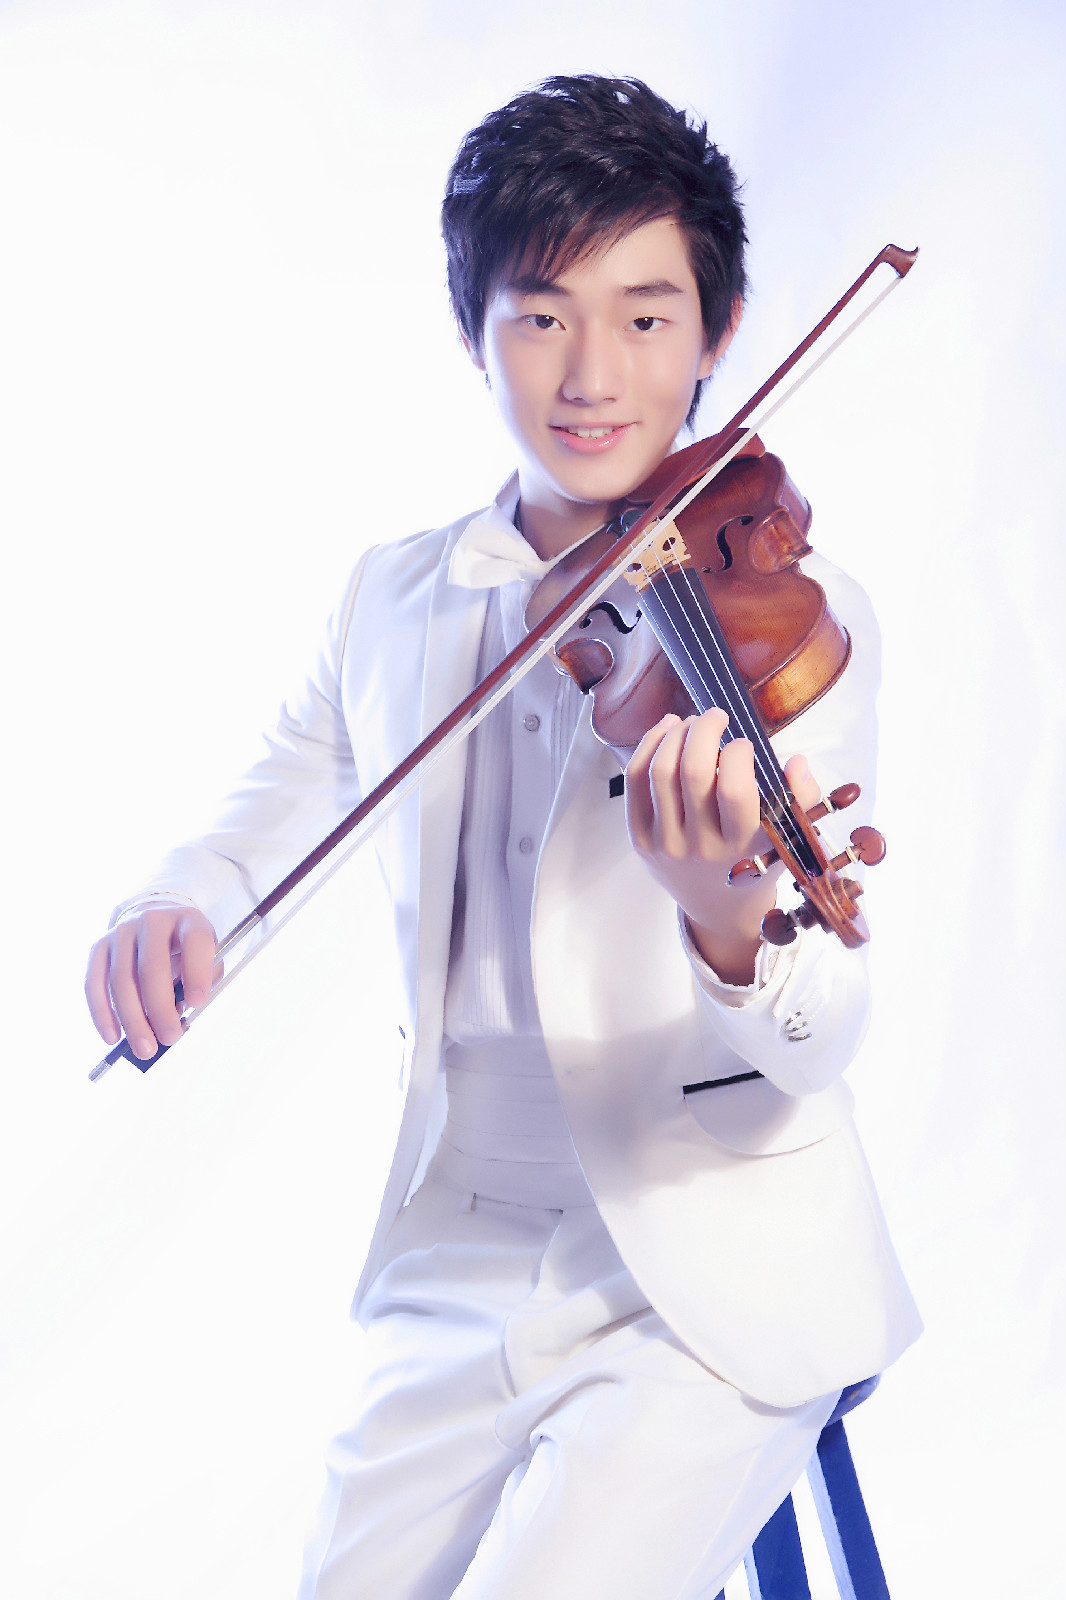 李澤宇(小提琴演奏家)